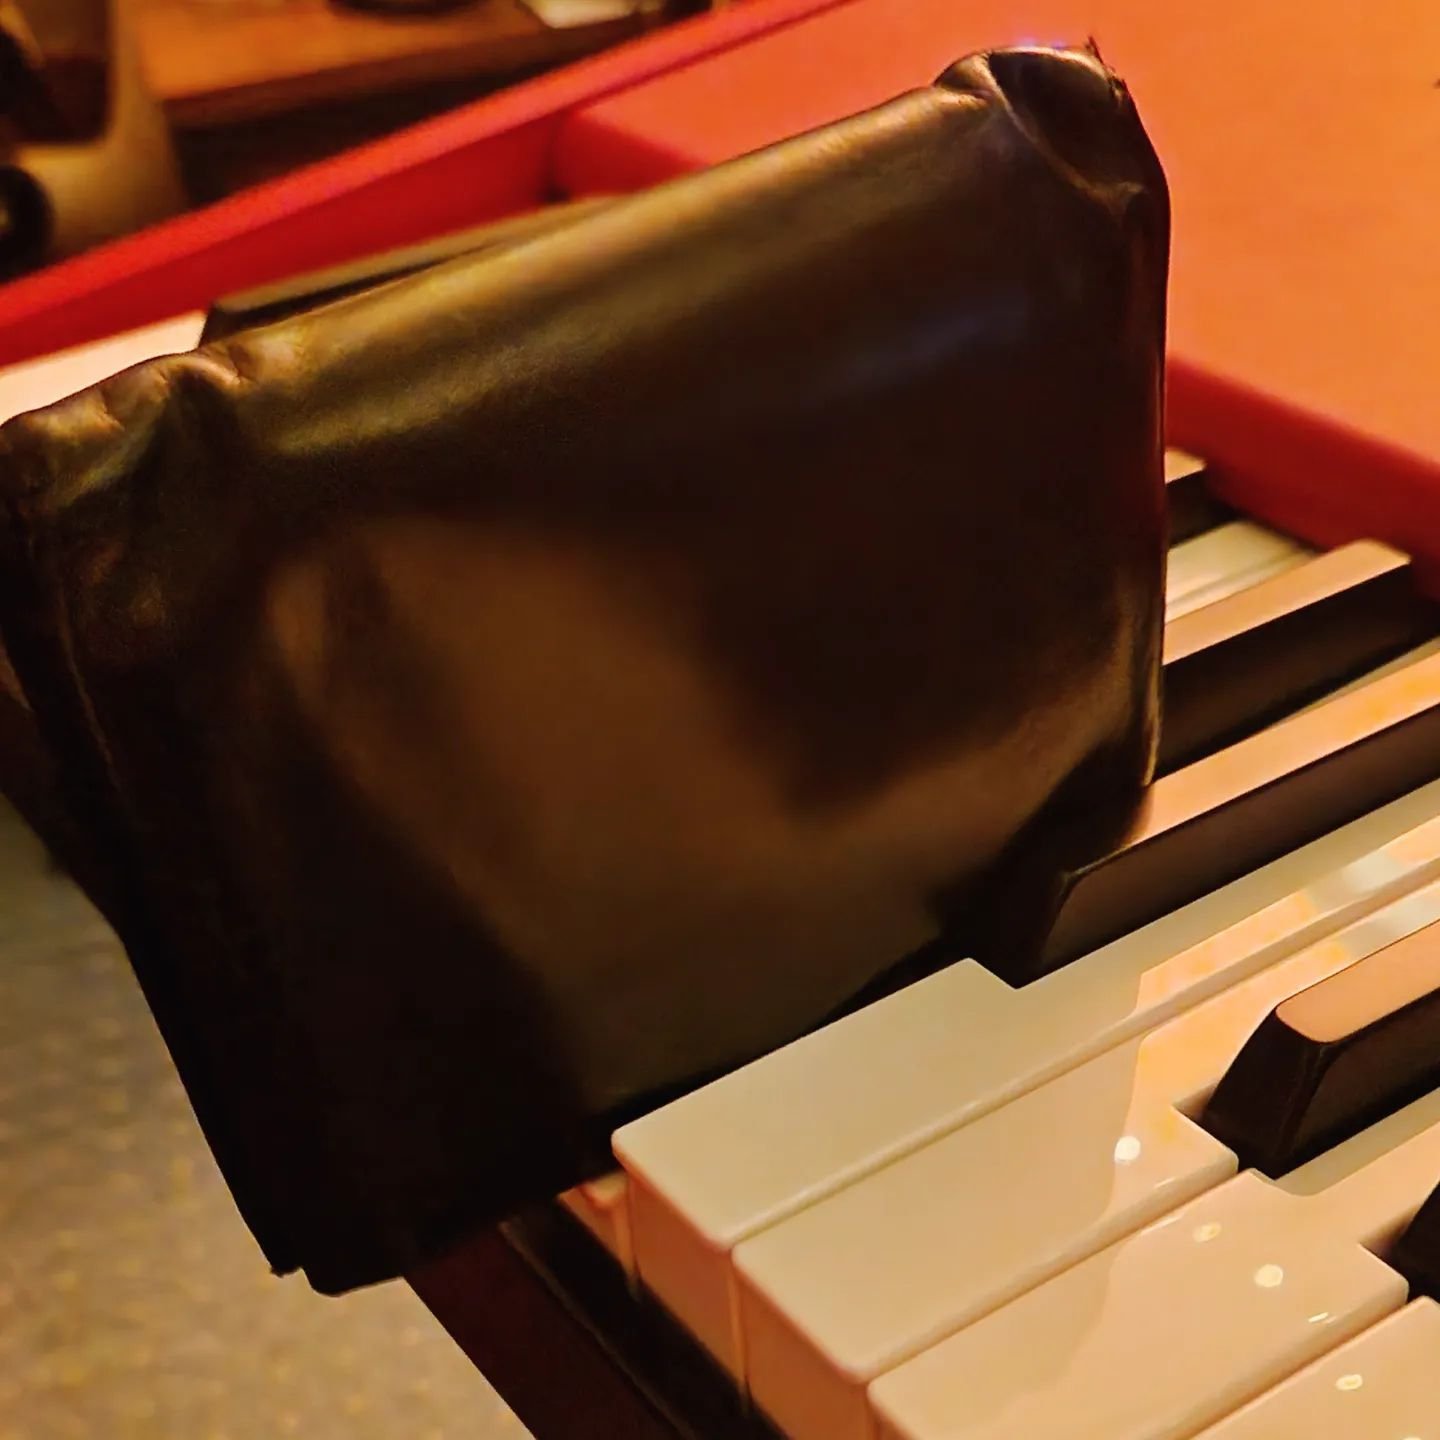 Geldbeutel statt Keyboarderin? Funktioniert nur bedingt 🤣 Gr&uuml;&szlig;e aus der Probe.🤘

#alternativemusic #handmademusic #probe #heavymusic